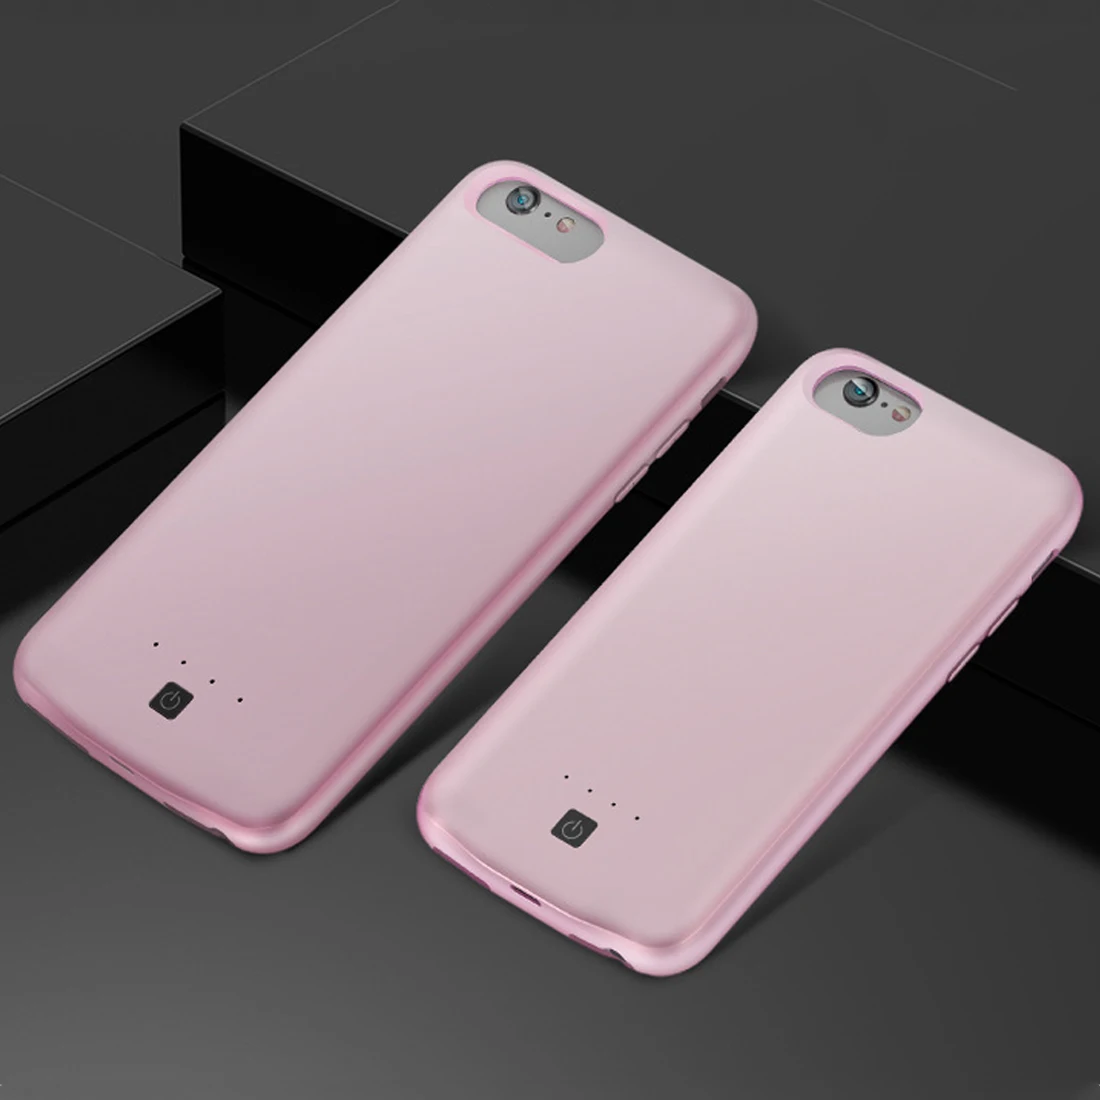 Ультра тонкий 3800mAh аккумулятор зарядное устройство чехол для iPhone SE 5SE 5 5S Банк питания зарядное устройство чехол Чехол для iPhone 5 - Цвет: Rose gold 4.7 inch